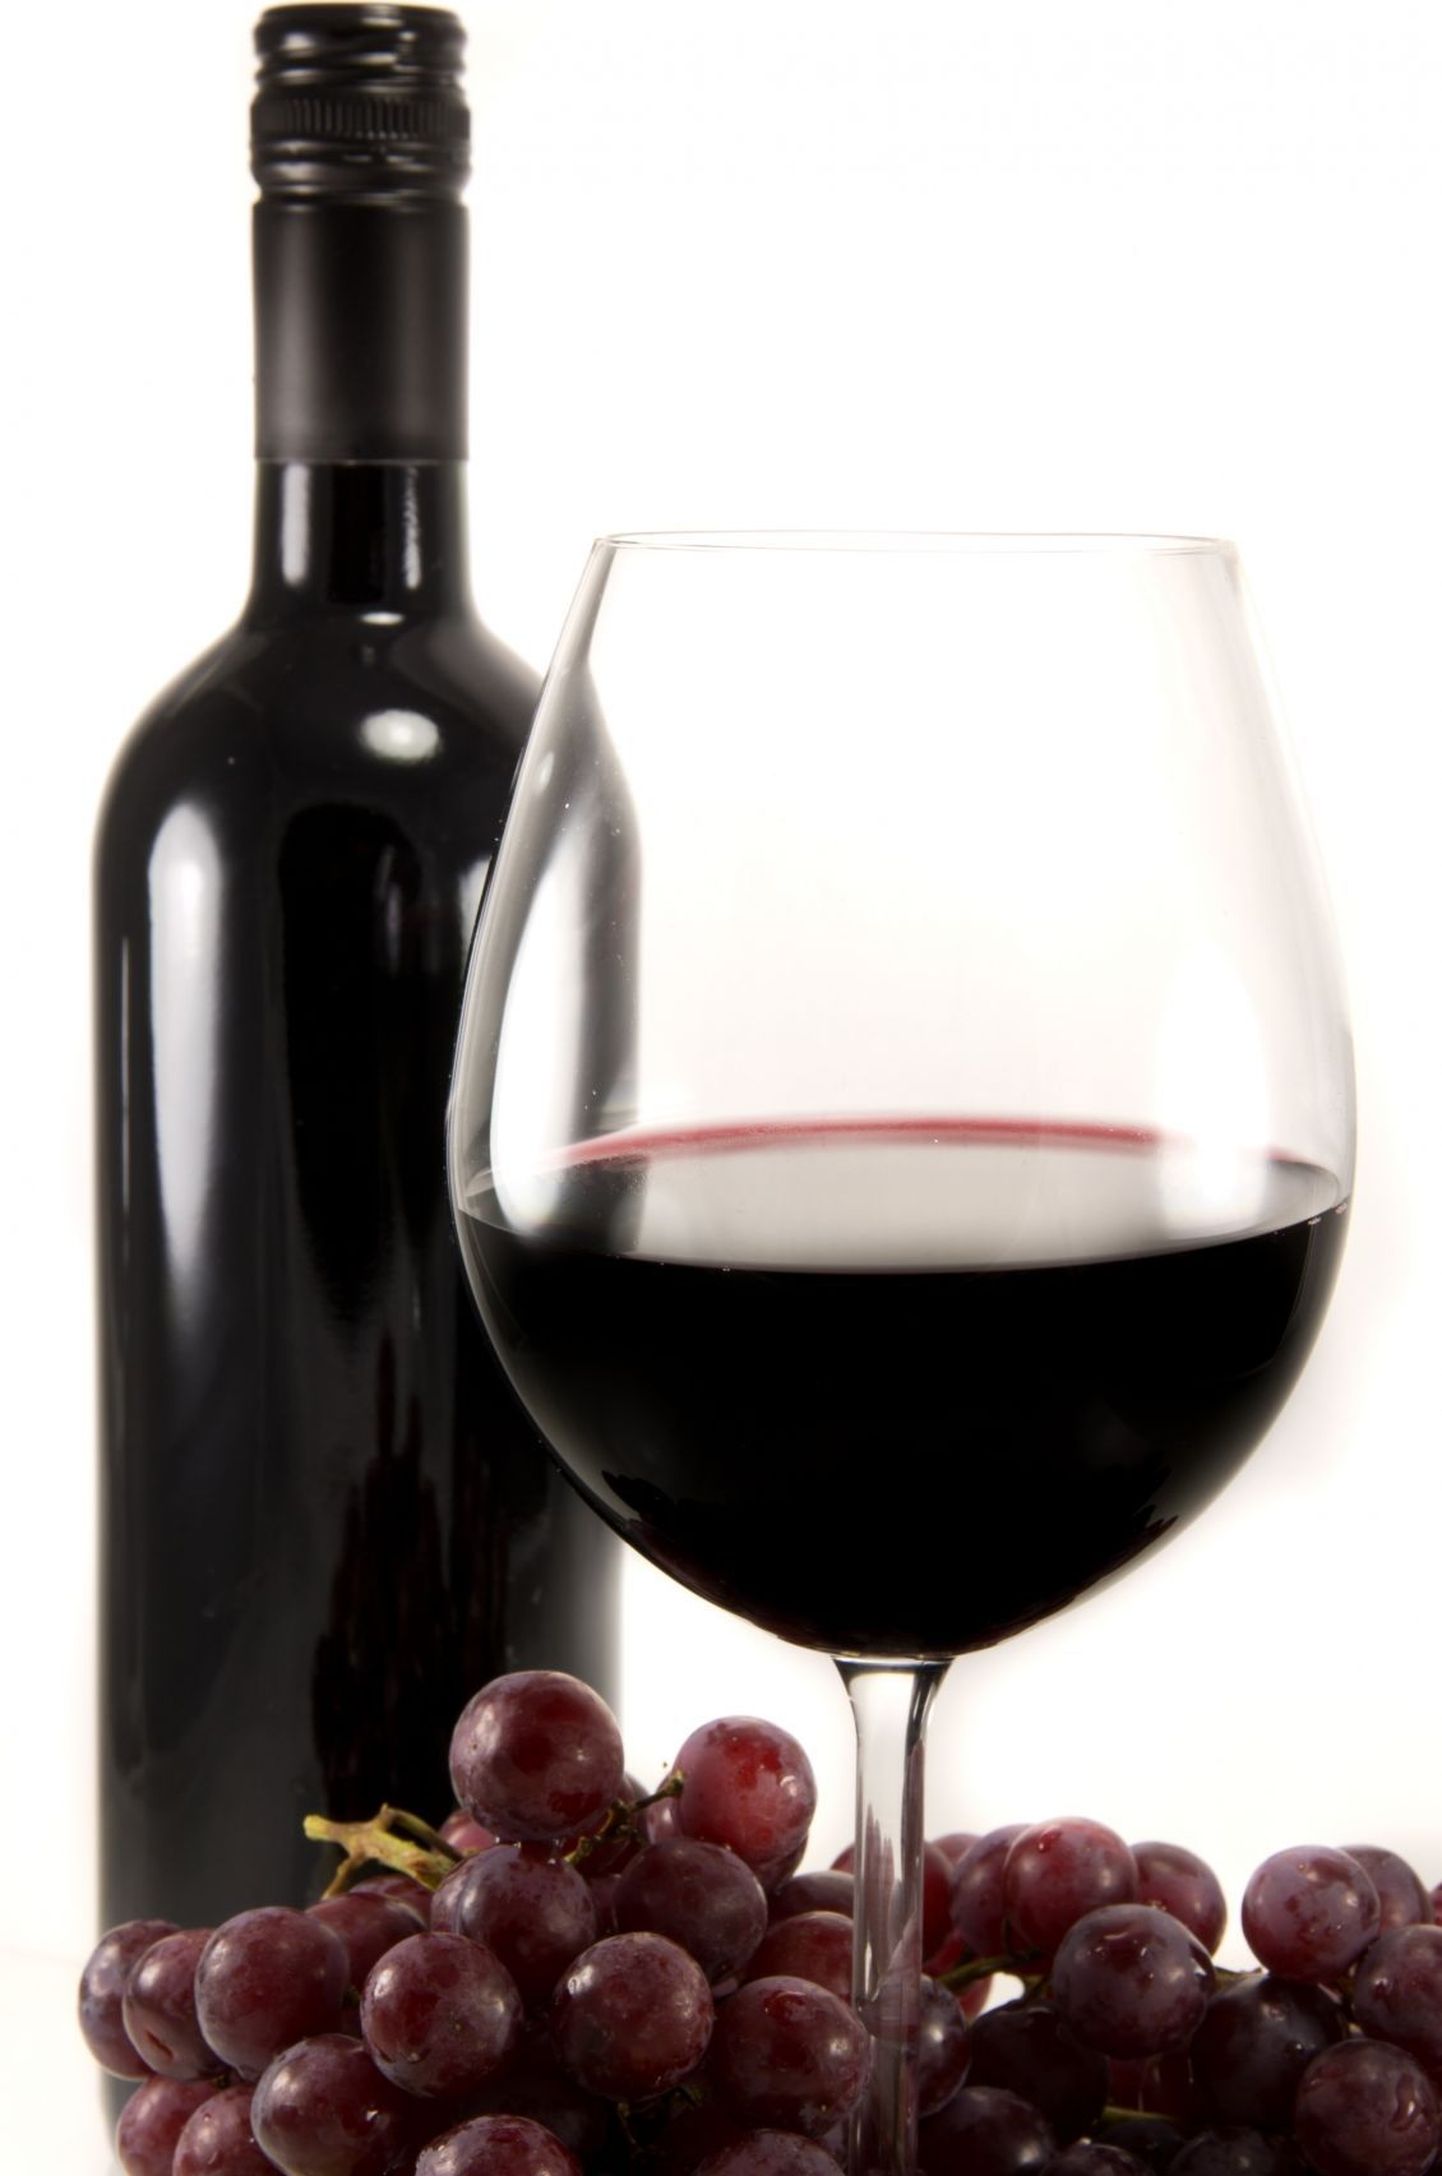 Kui veini kogus on sama, joome rohkem suurematest klaasidest.